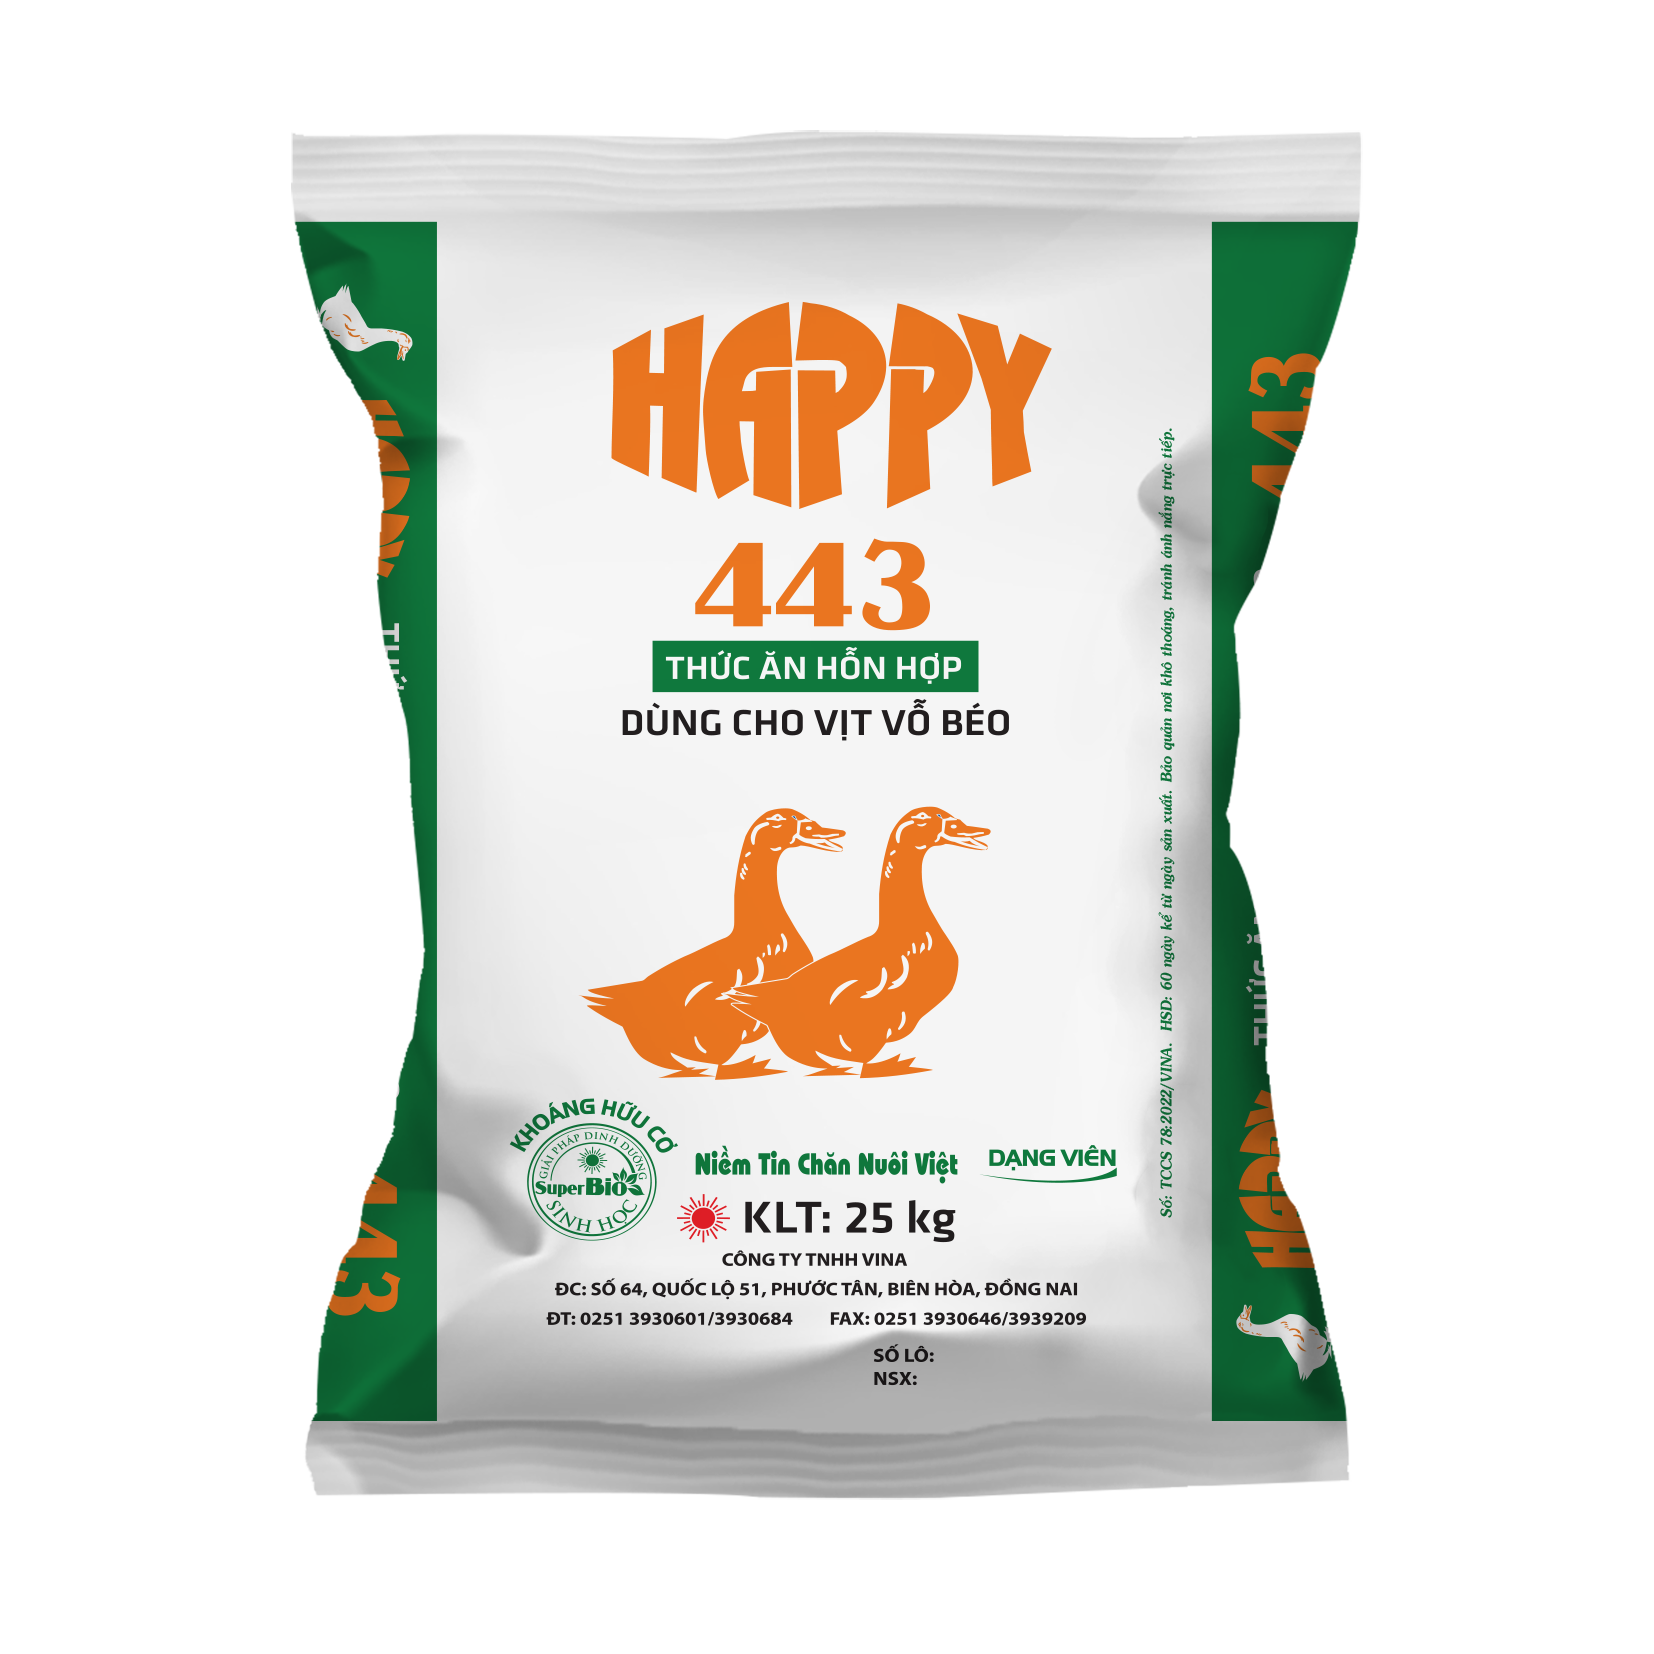 HAPPY 443